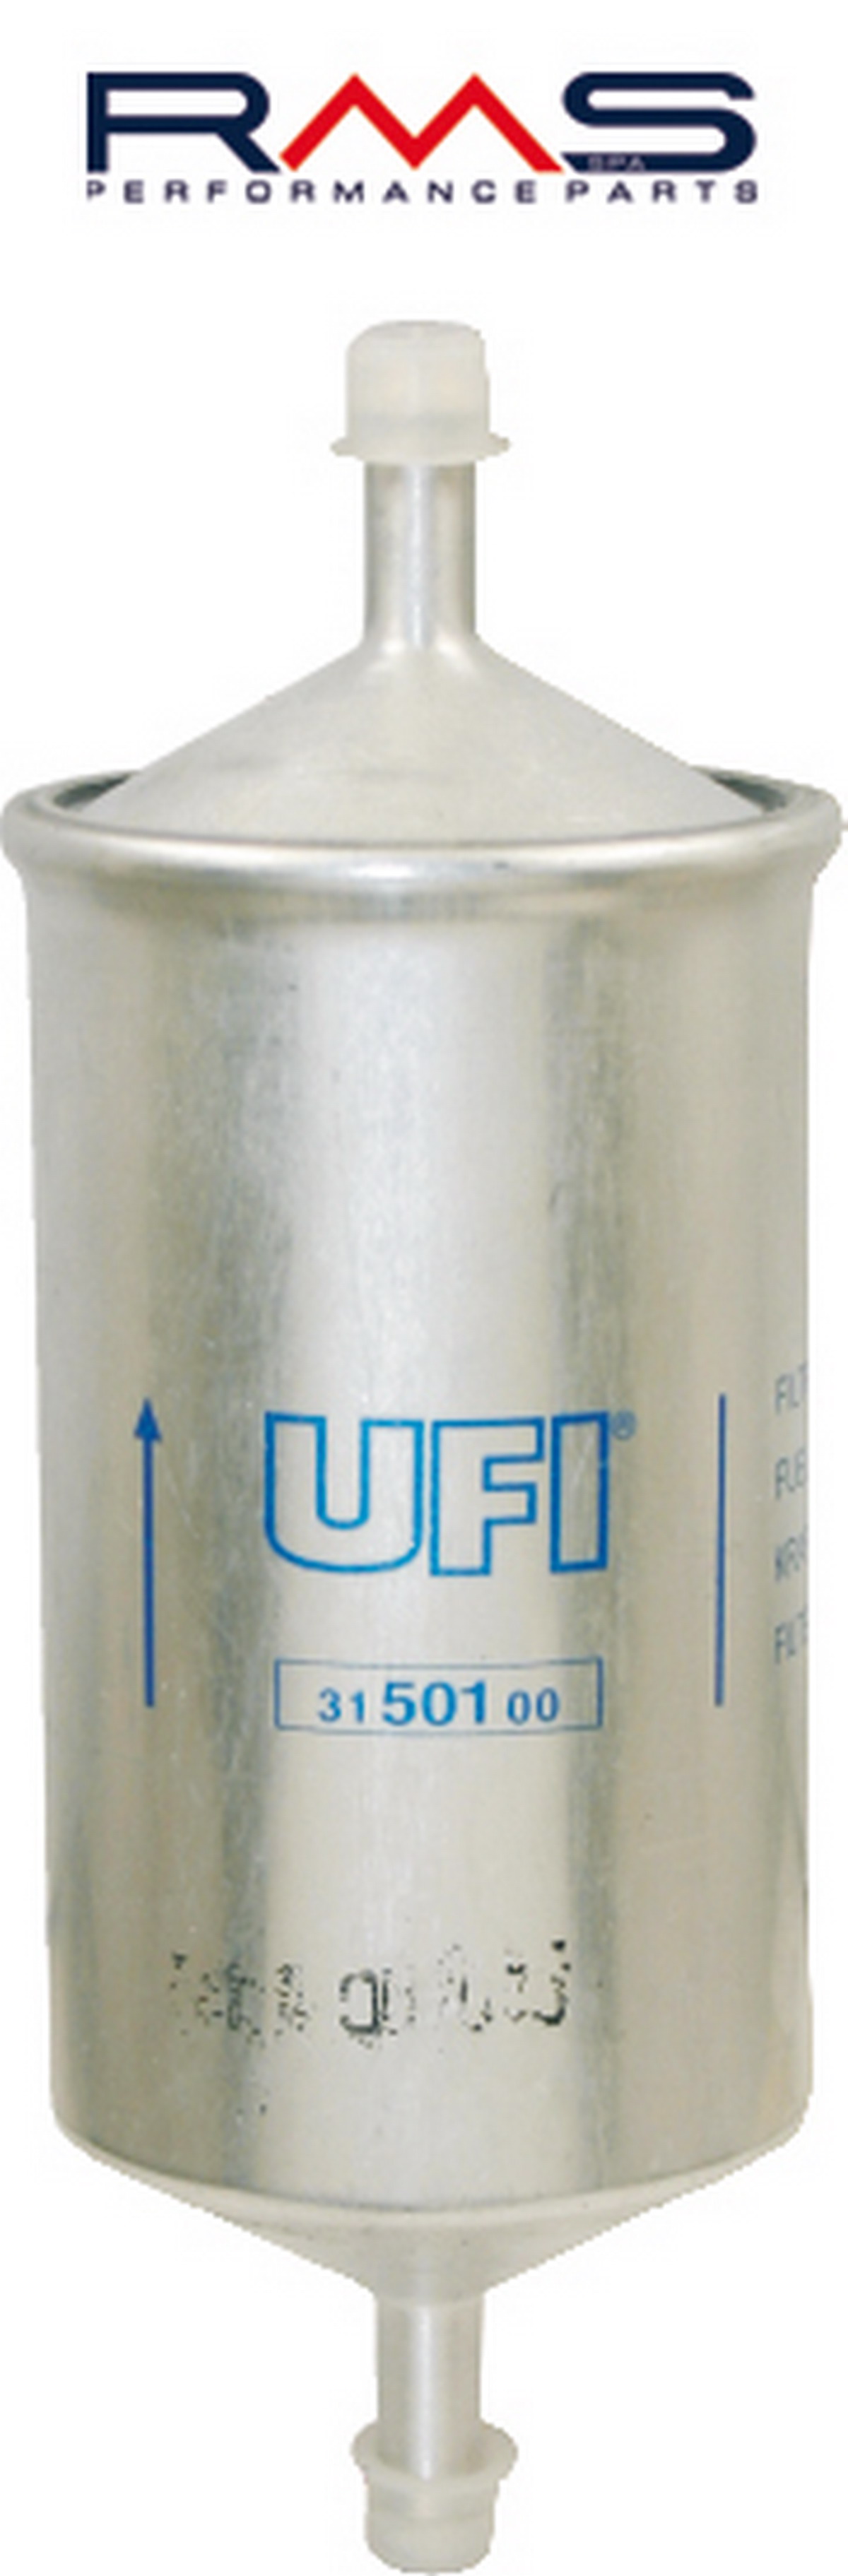 Obrázek produktu Palivový filtr UFI 100607020 100607020